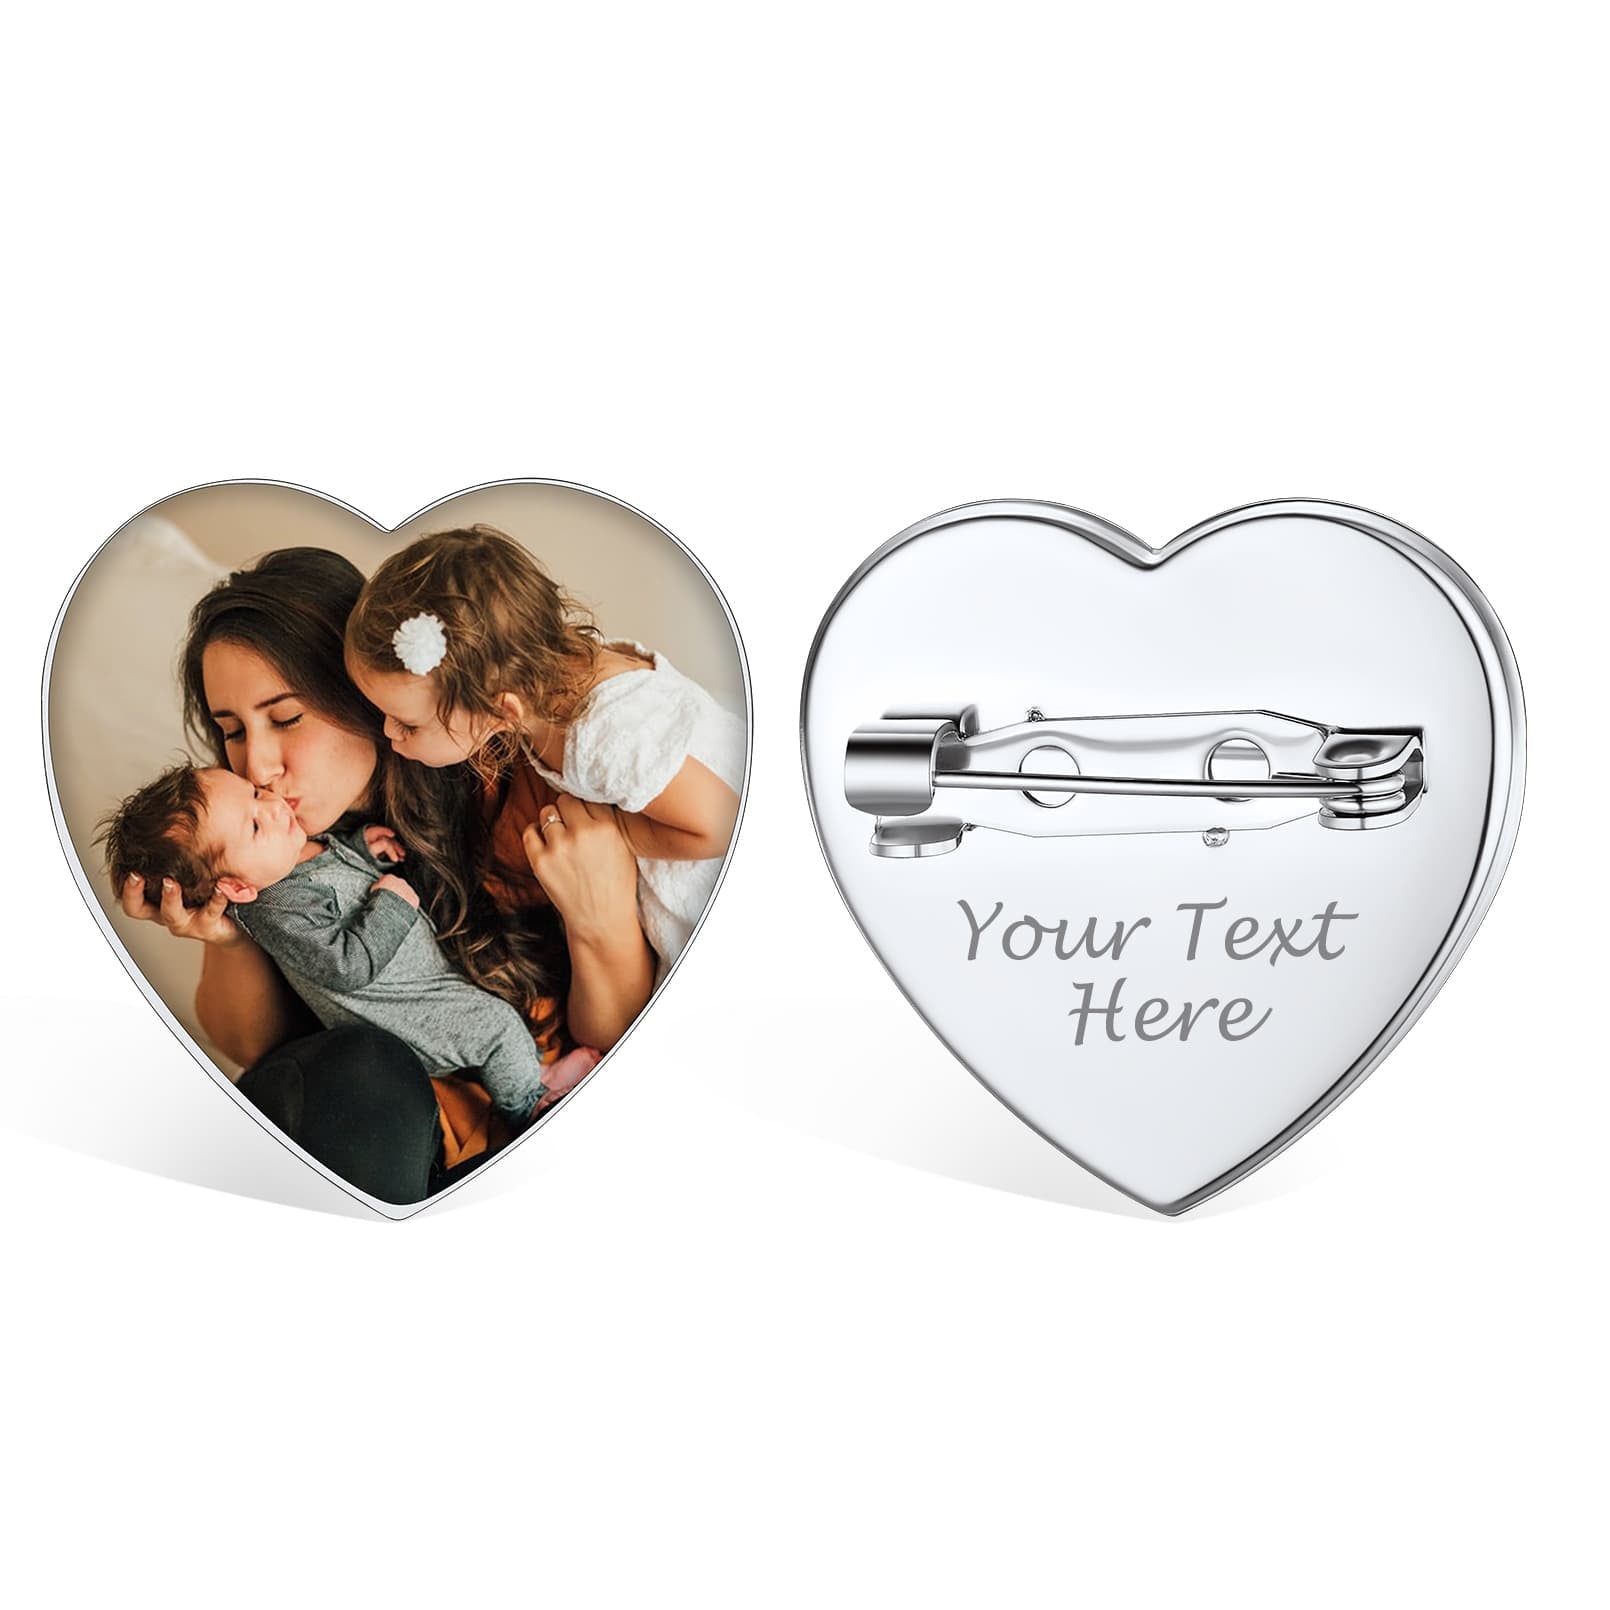 Birthstonesjewelry Personalized Heart Photo Brooch Pins Steel